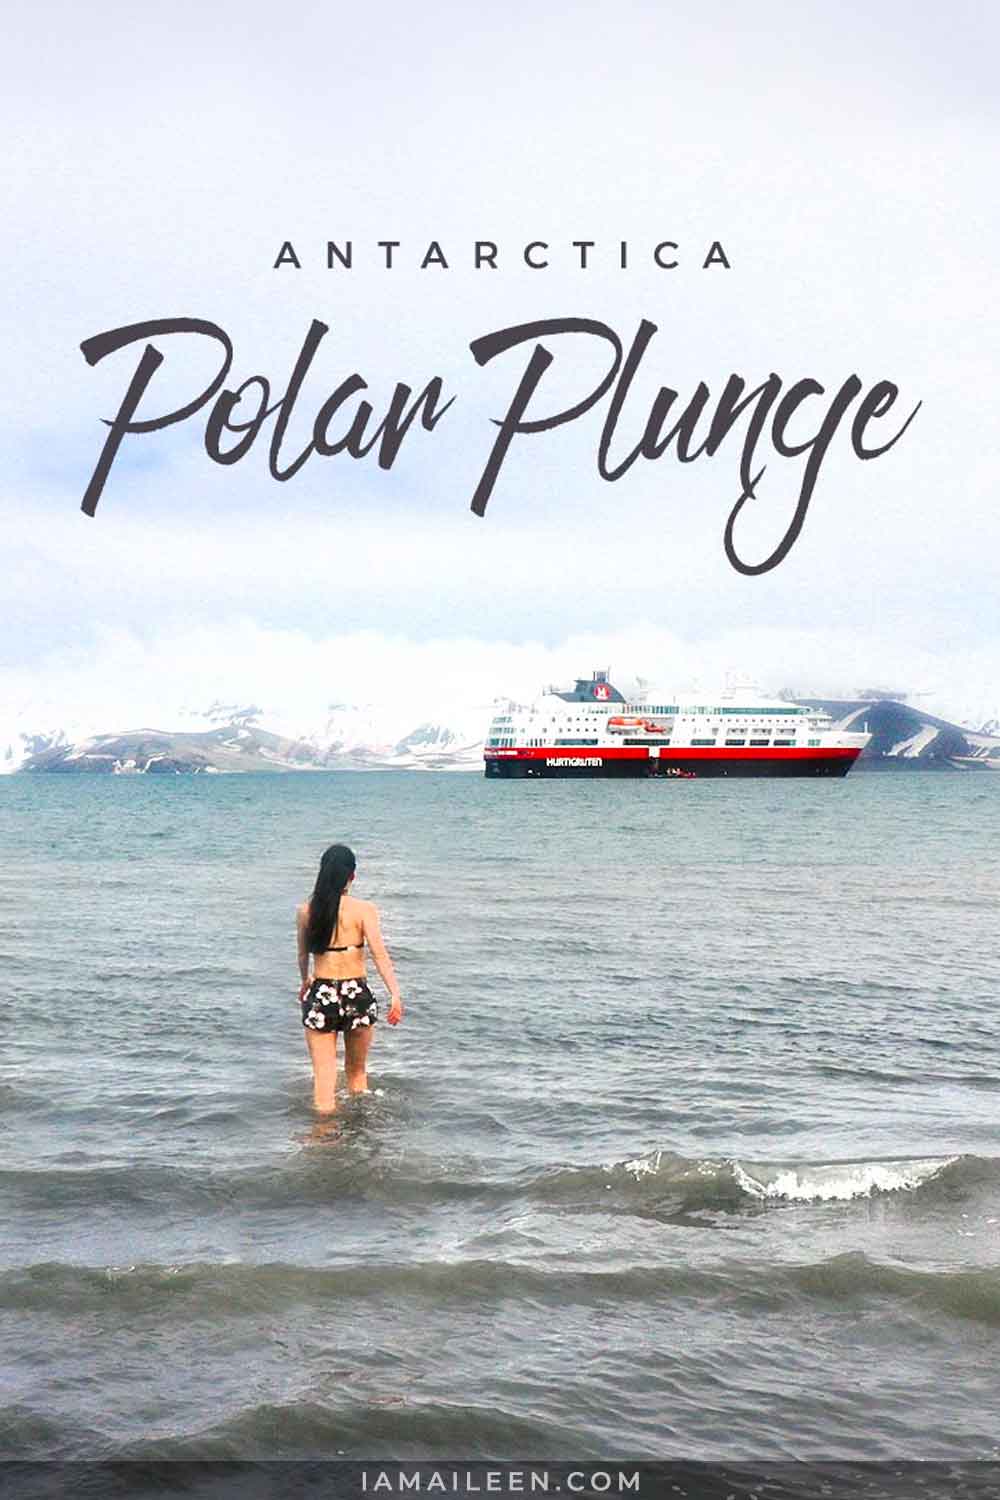 Polar Plunge Antarctica